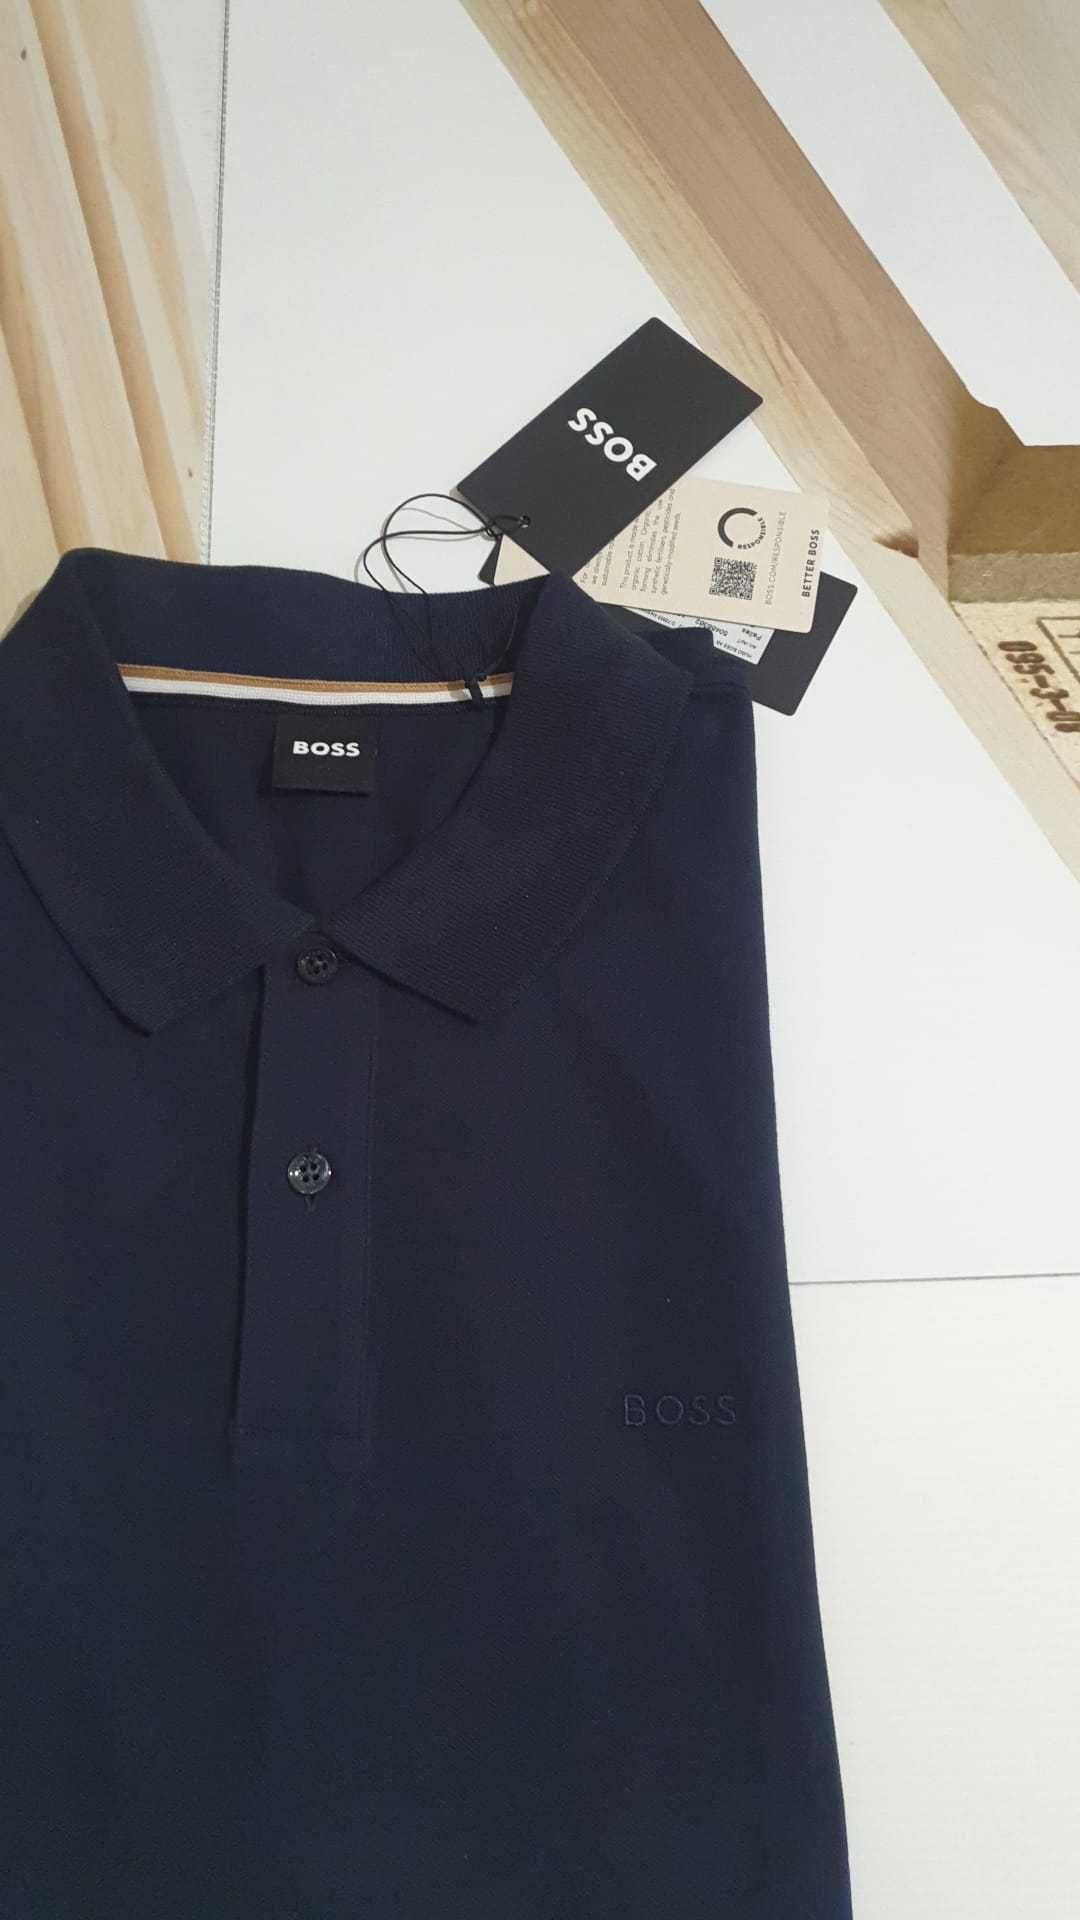 Vand tricou barbat Hugo Boss masura L si XL original nou cu eticheta